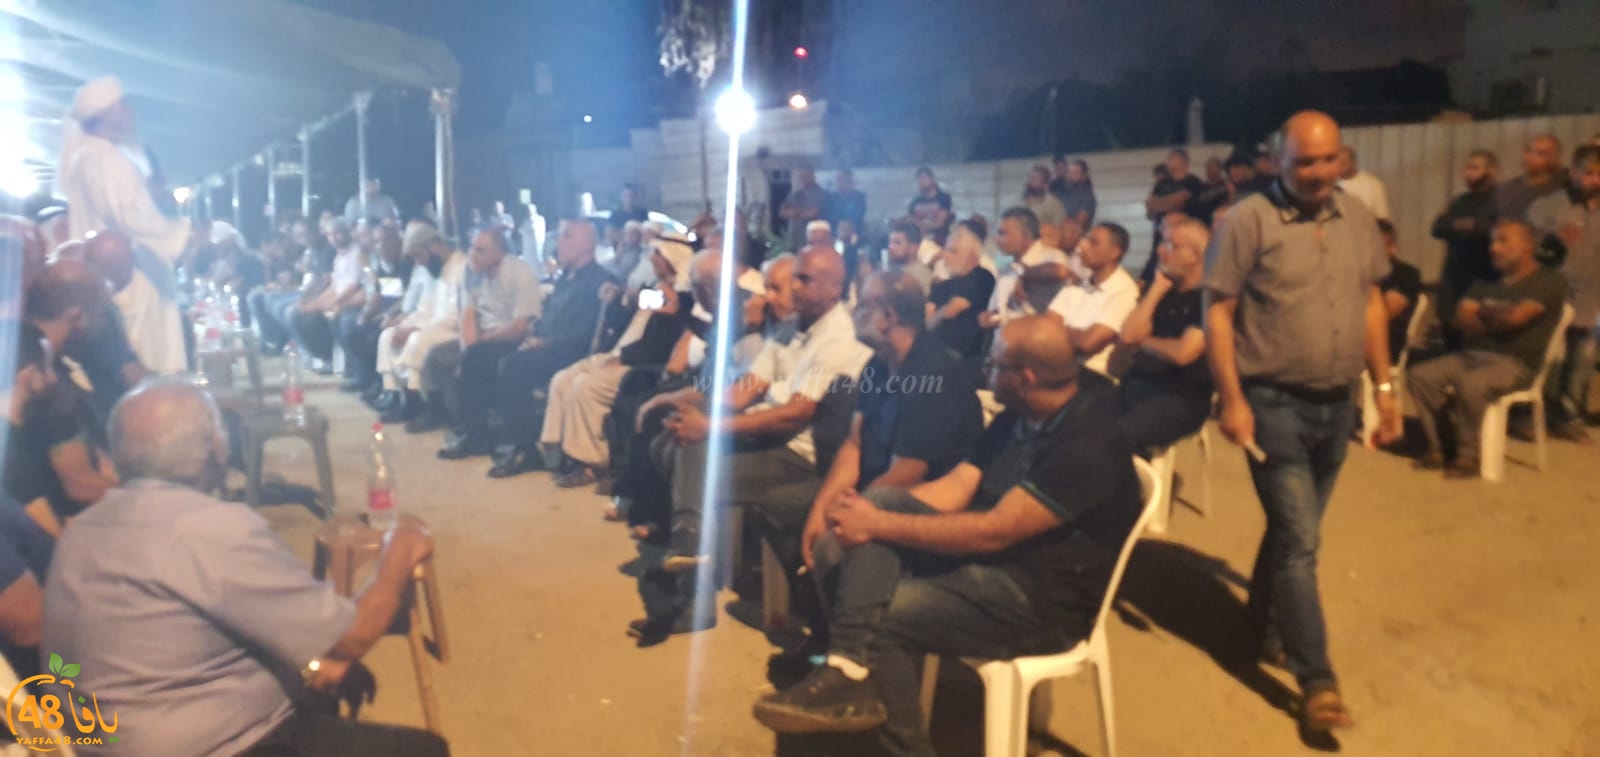 اللد تشهد قمة العفو والتسامح والصفح بين آل ابو شريقي وآل برهومة